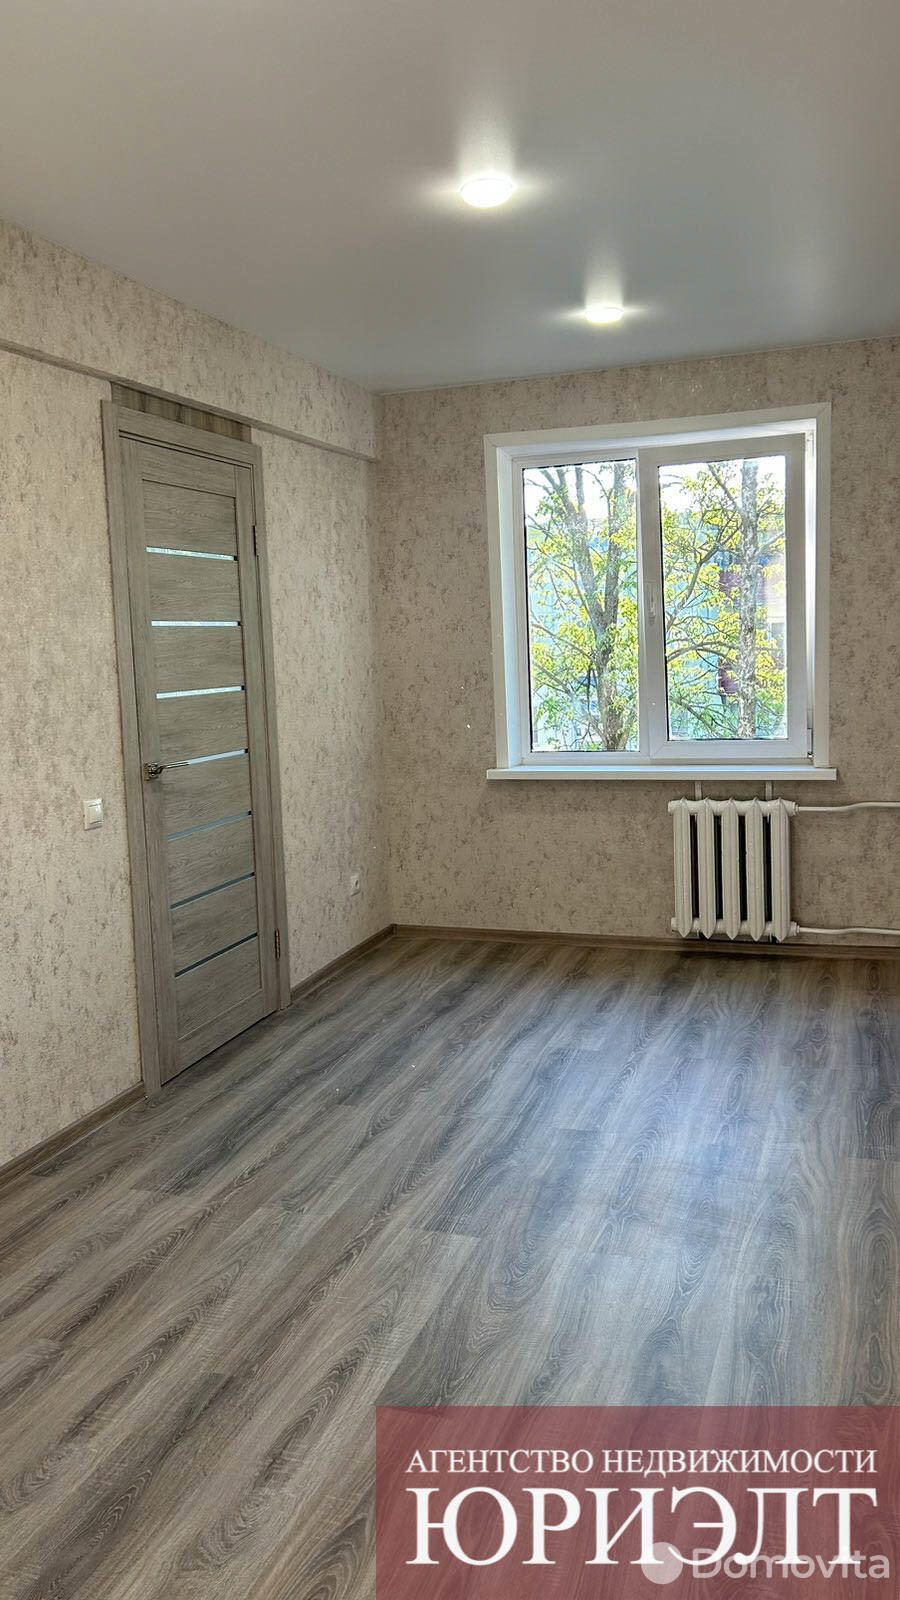 квартира, Борисов, ул. Чапаева, д. 36, стоимость продажи 105 871 р.